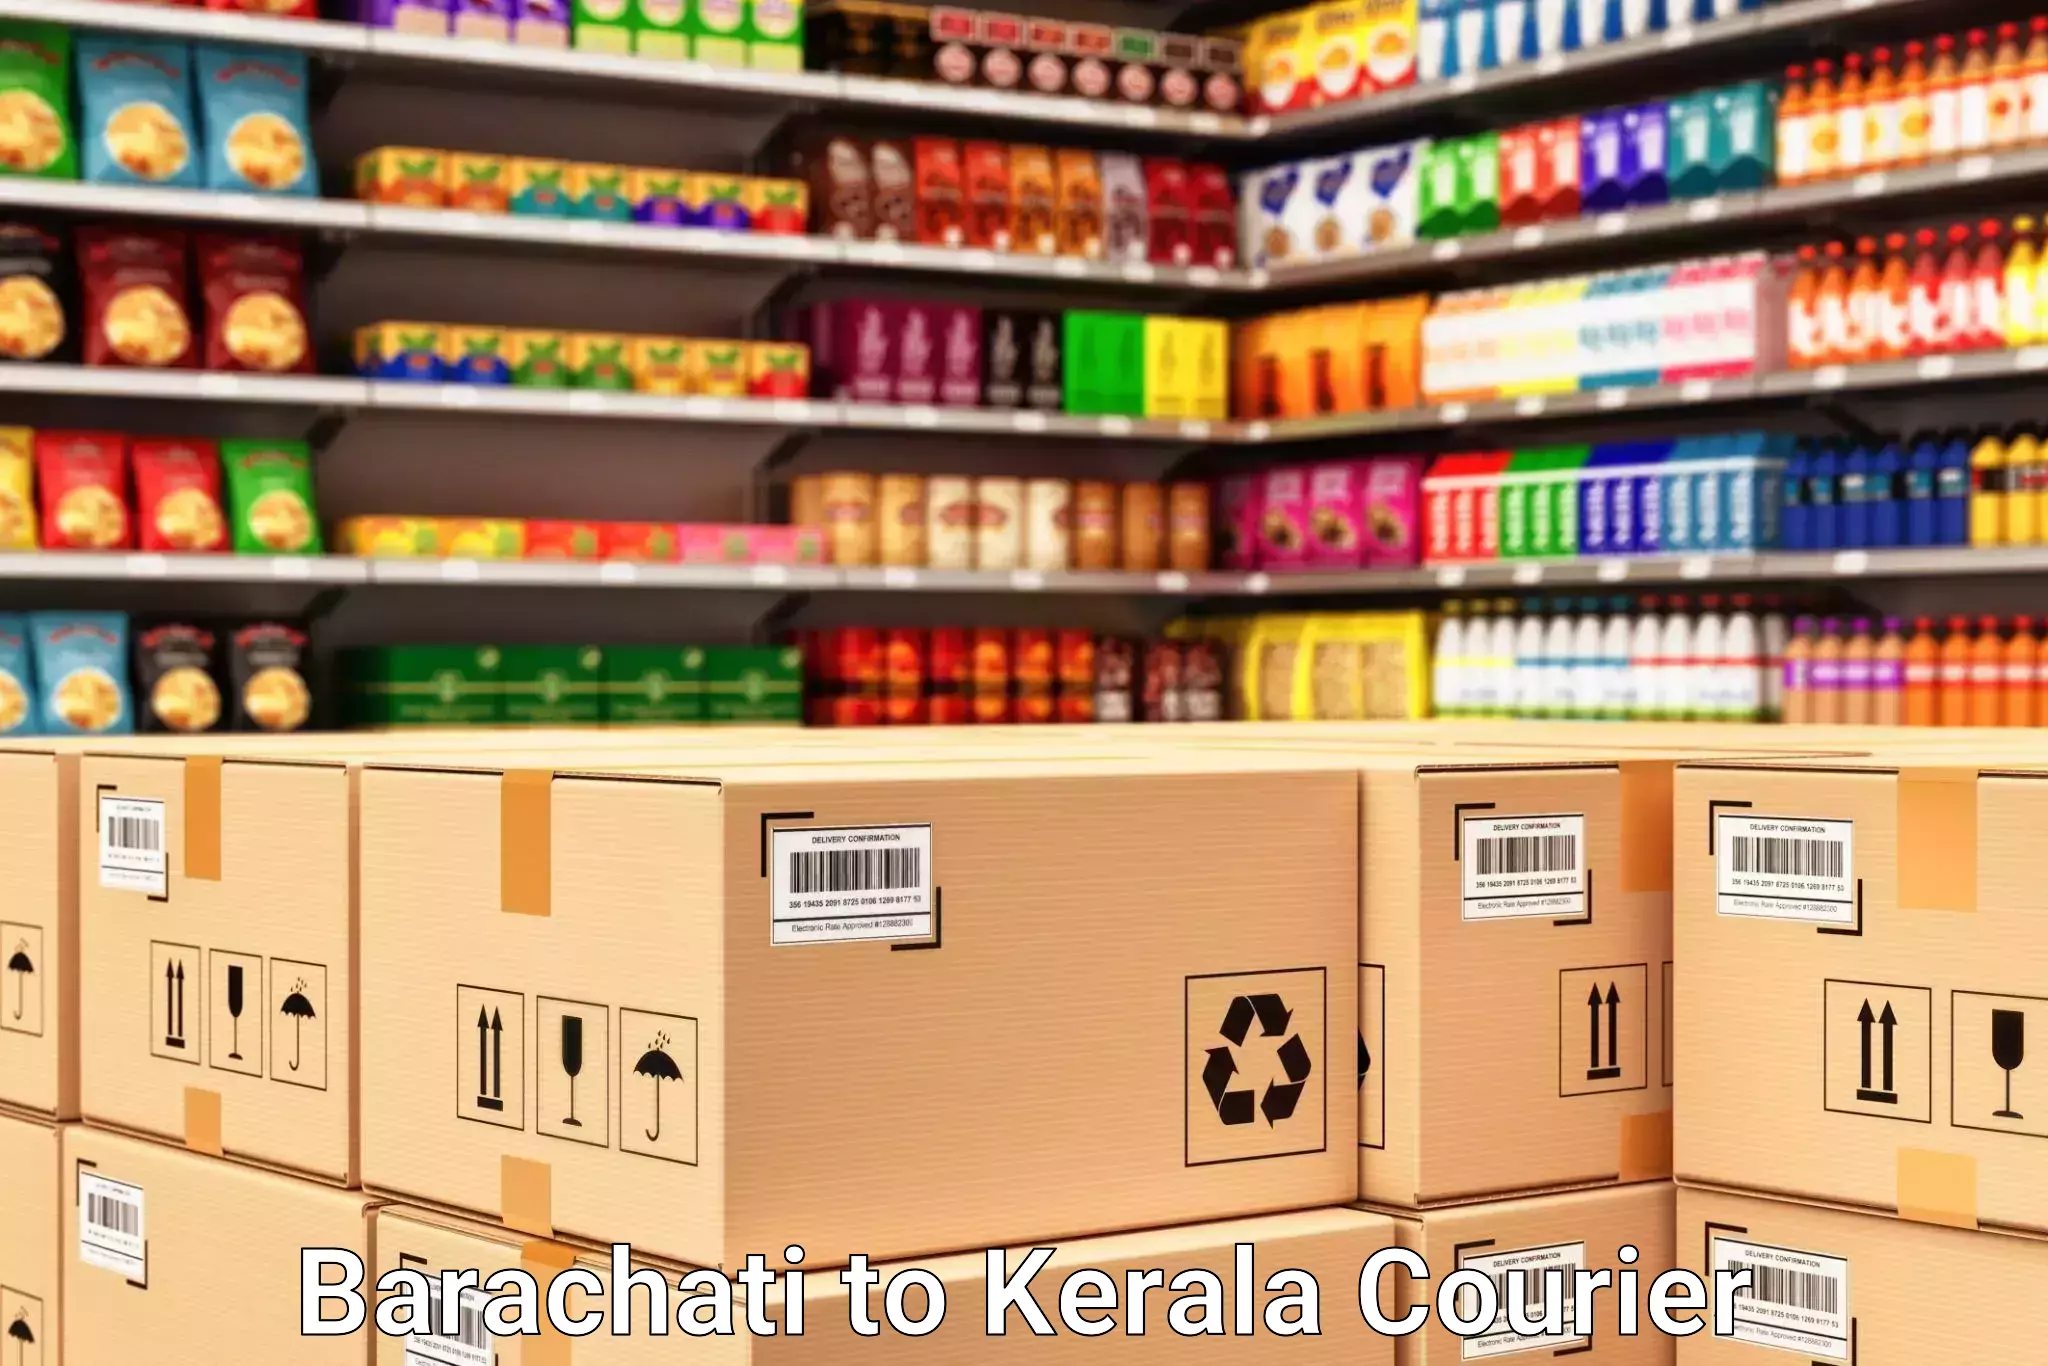 Luggage transfer service Barachati to Kerala